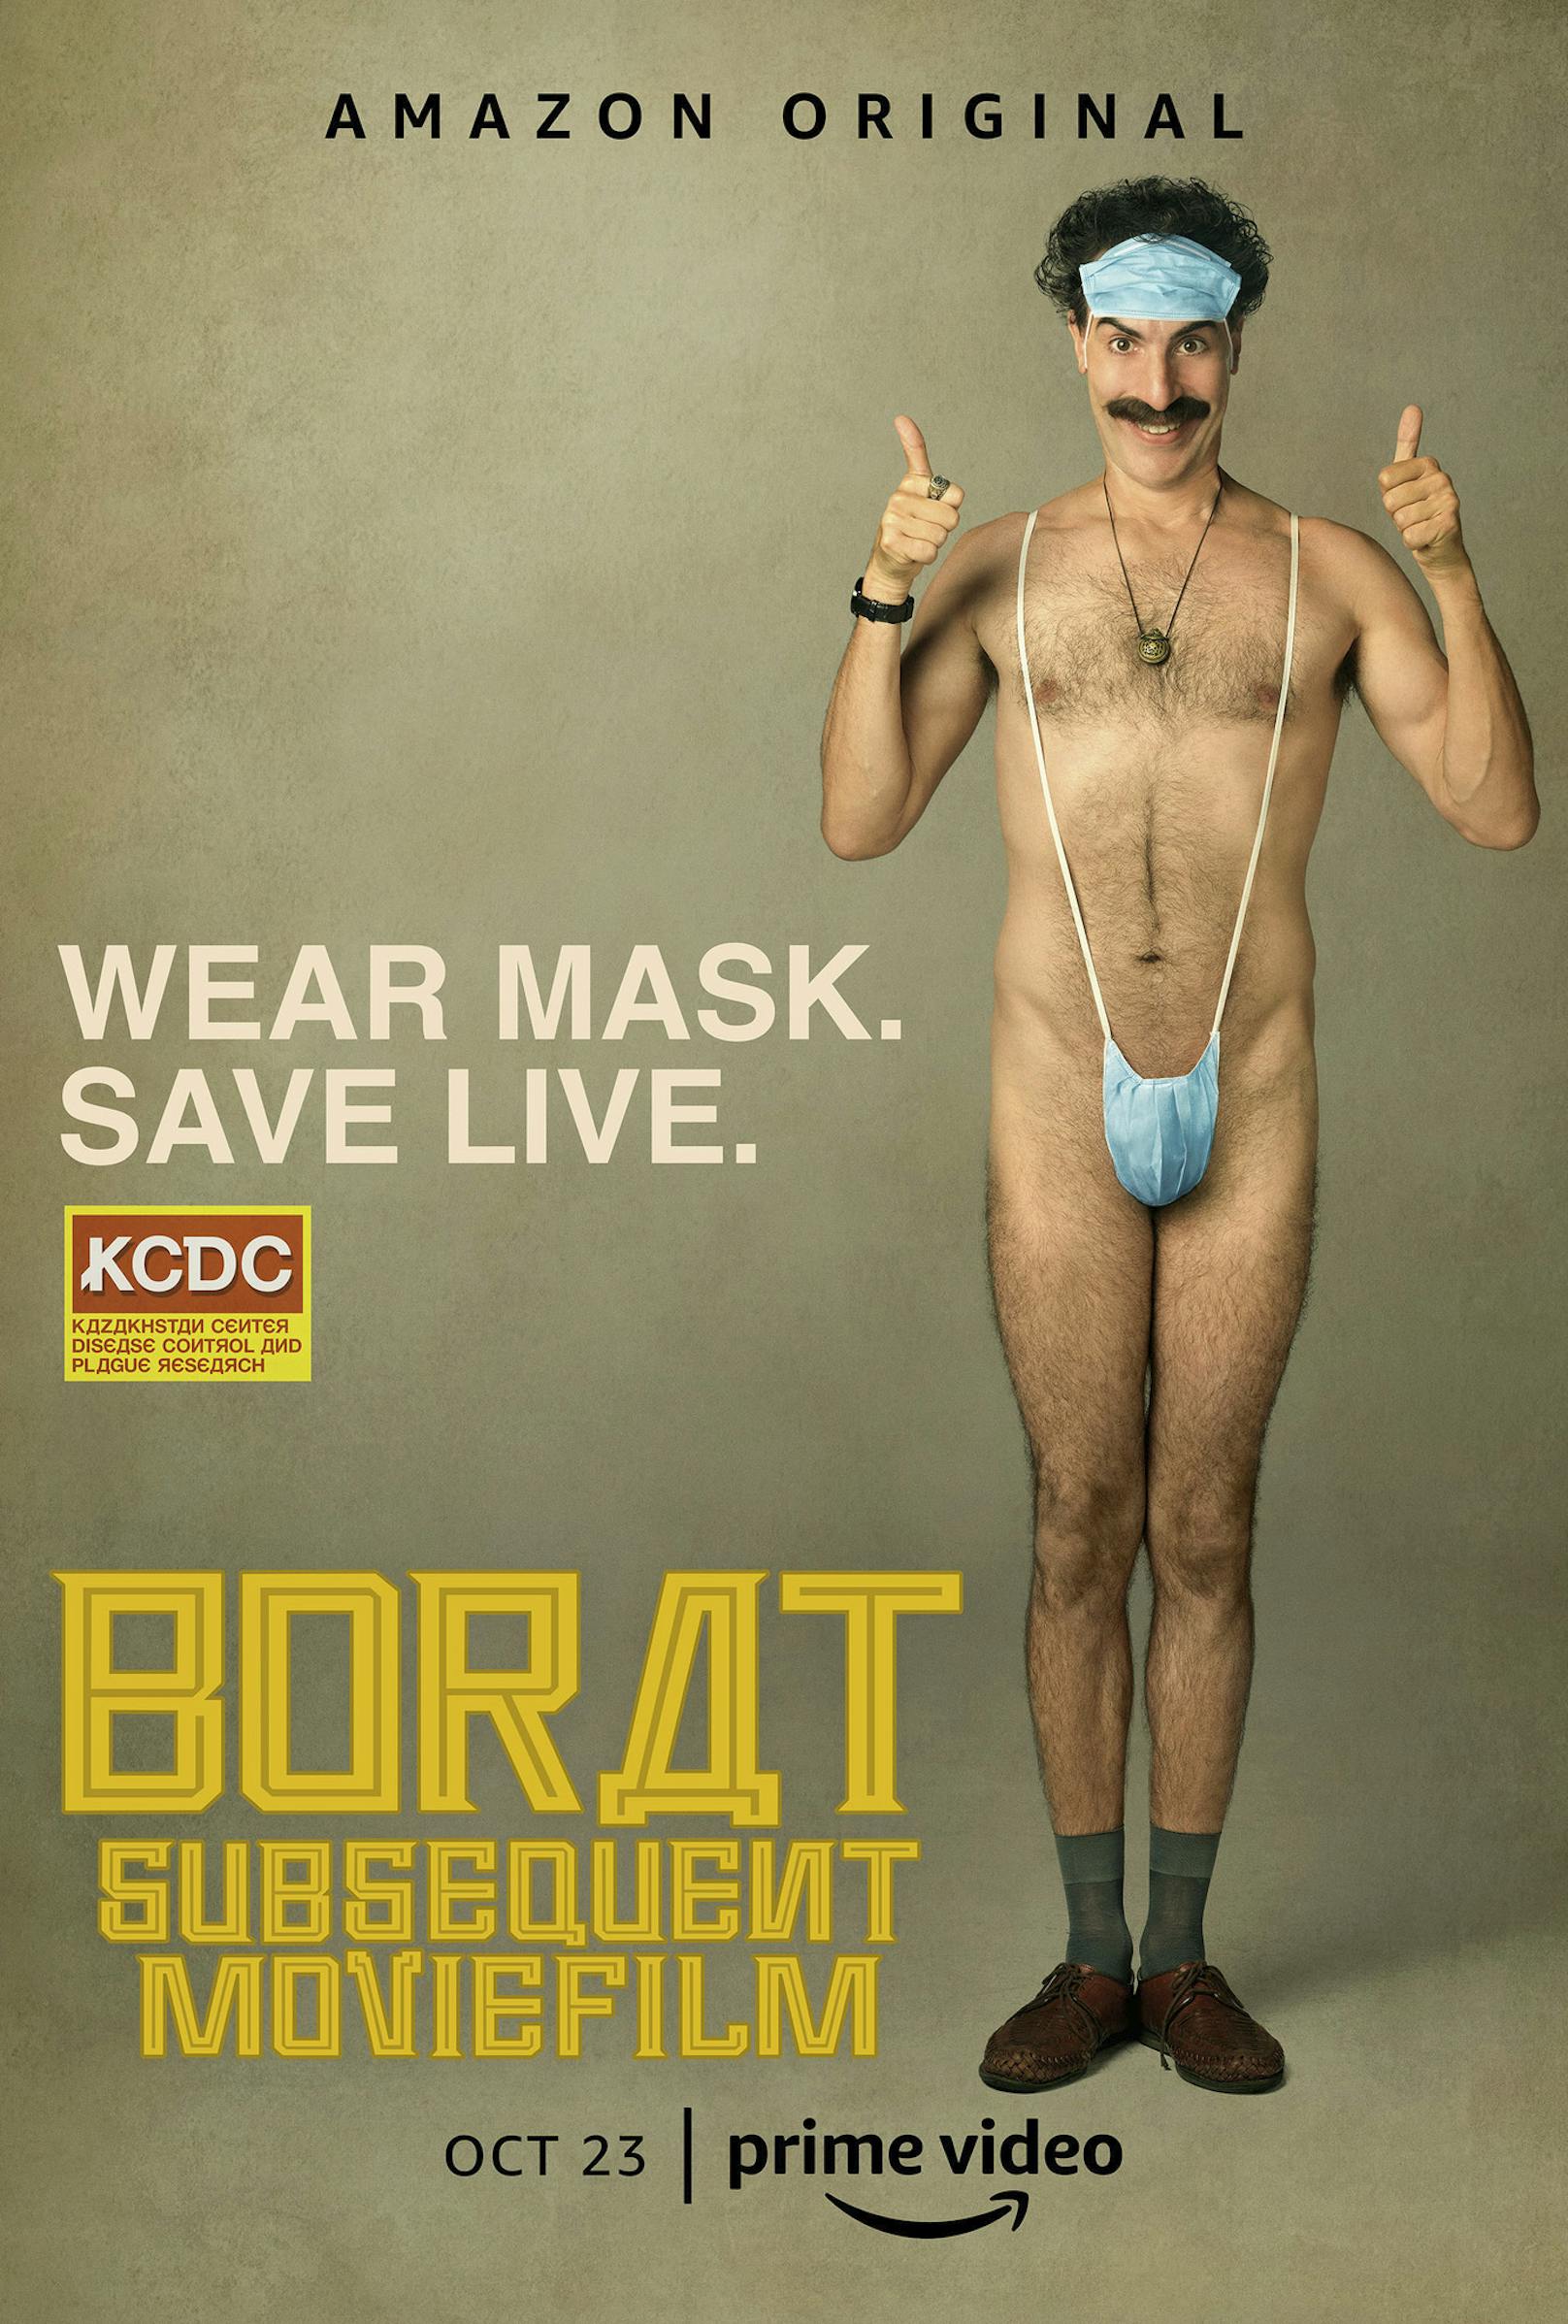 "Borat 2" lässt die Masken fallen